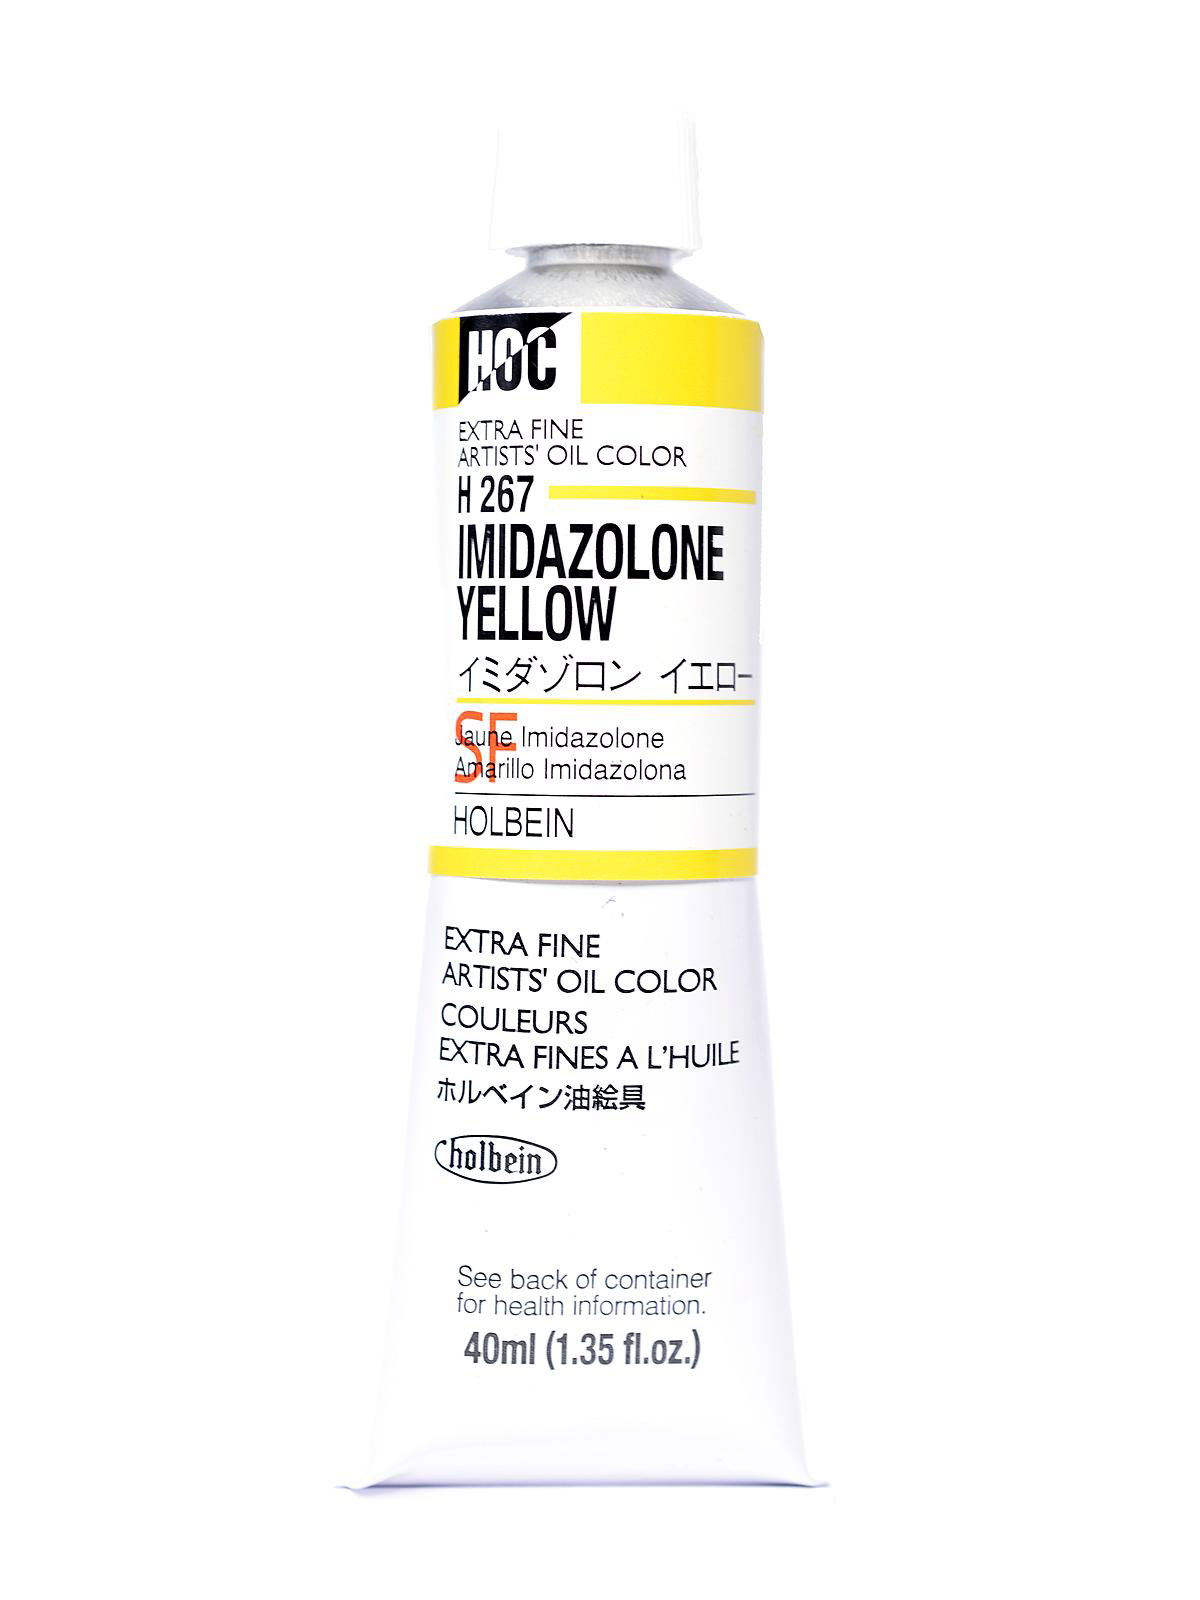 Imidazolone Yellow